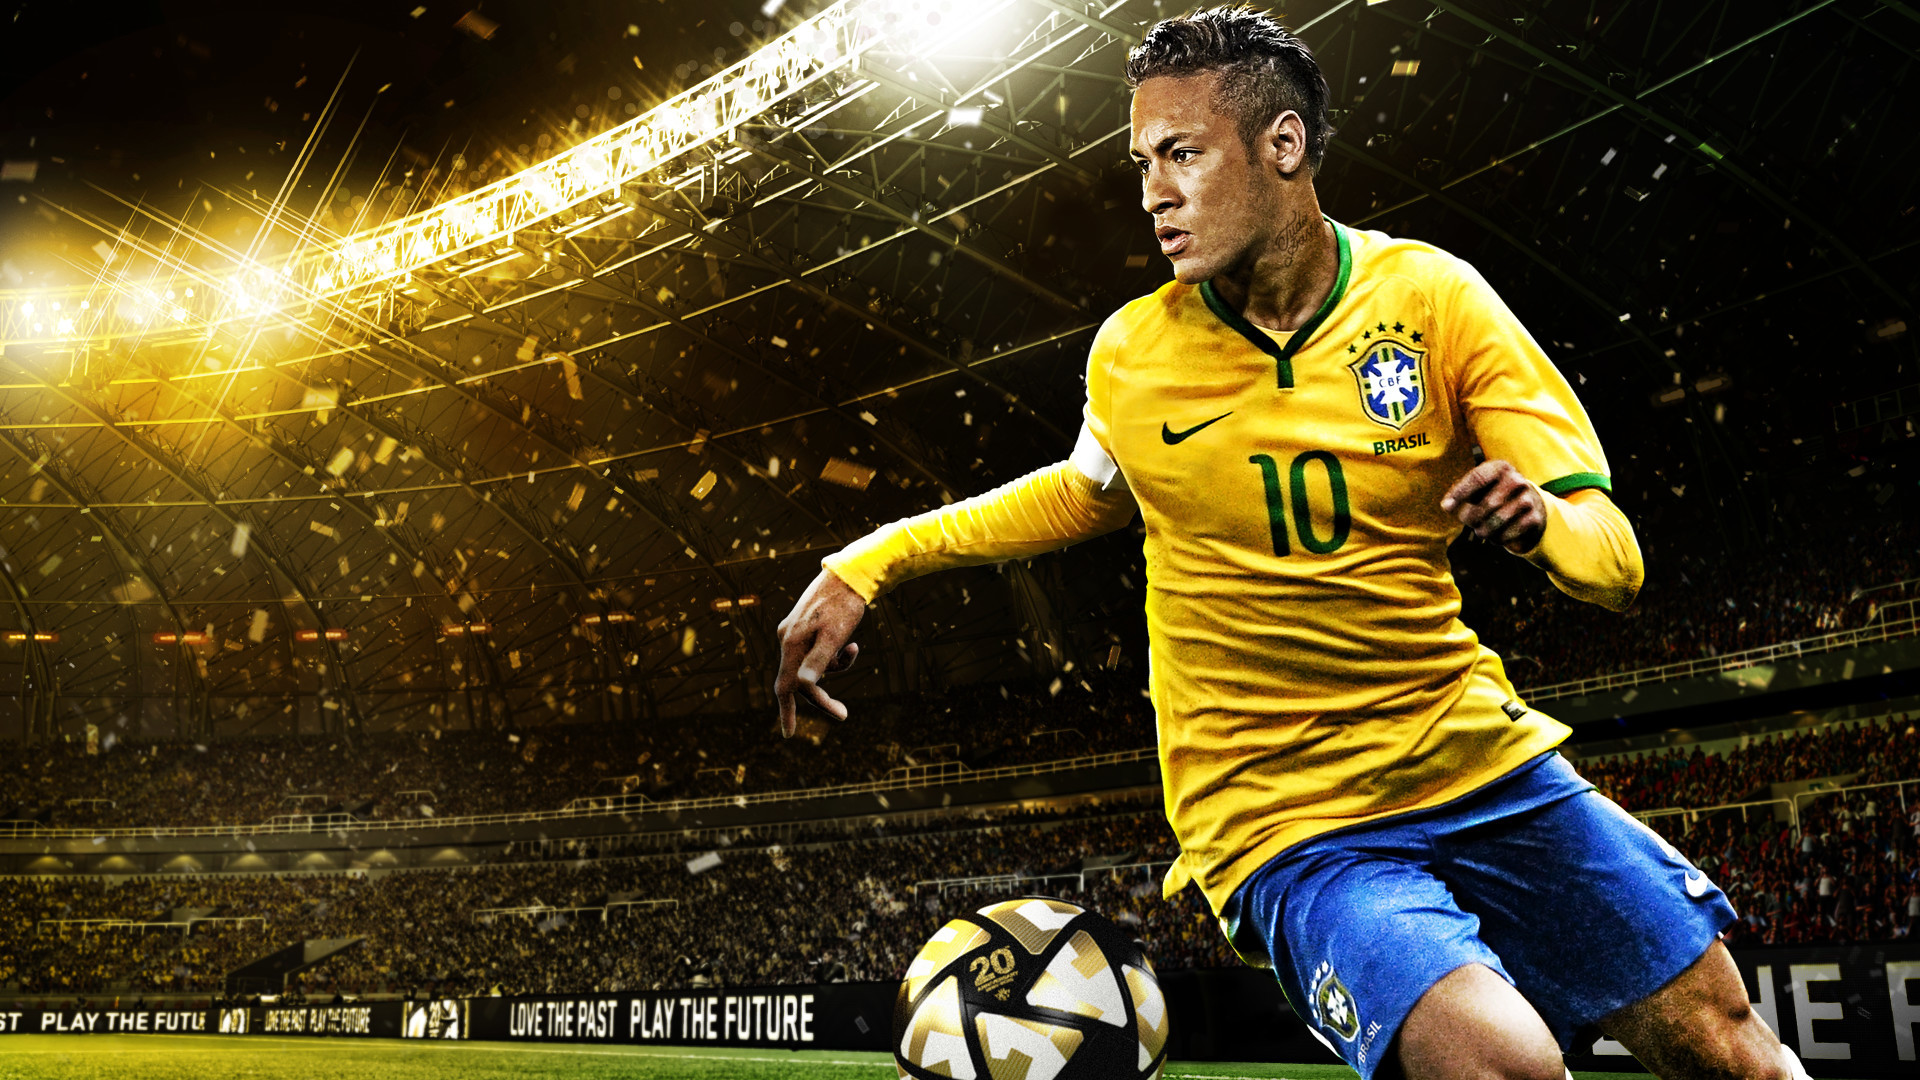 Neymar Jr Hd Image 34566656768 - Winning Eleven 2016 Ps3 - HD Wallpaper 